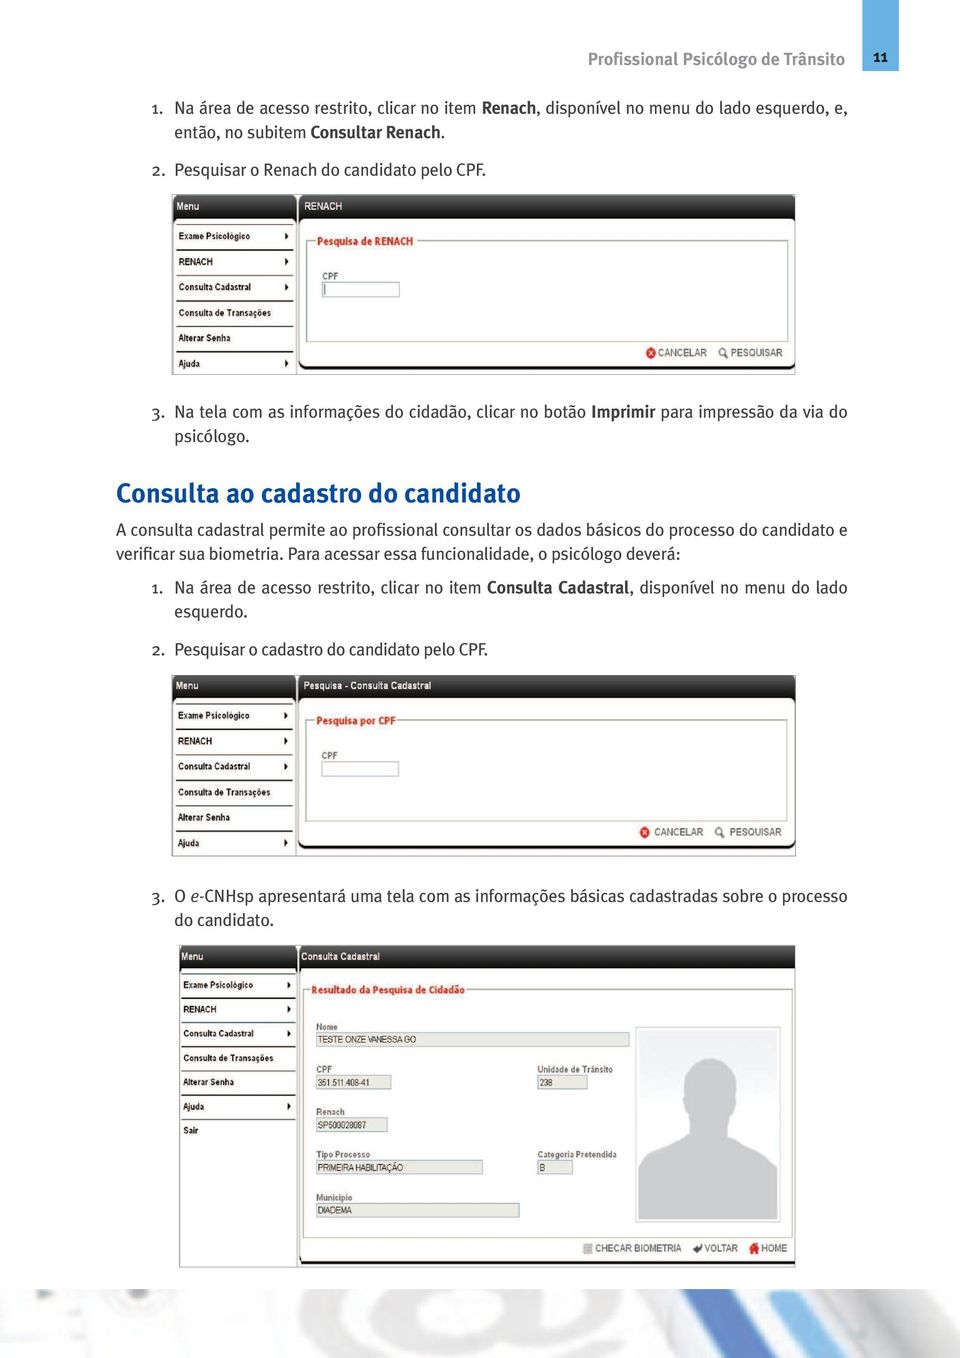 Consulta ao cadastro do candidato A consulta cadastral permite ao profissional consultar os dados básicos do processo do candidato e verificar sua biometria.